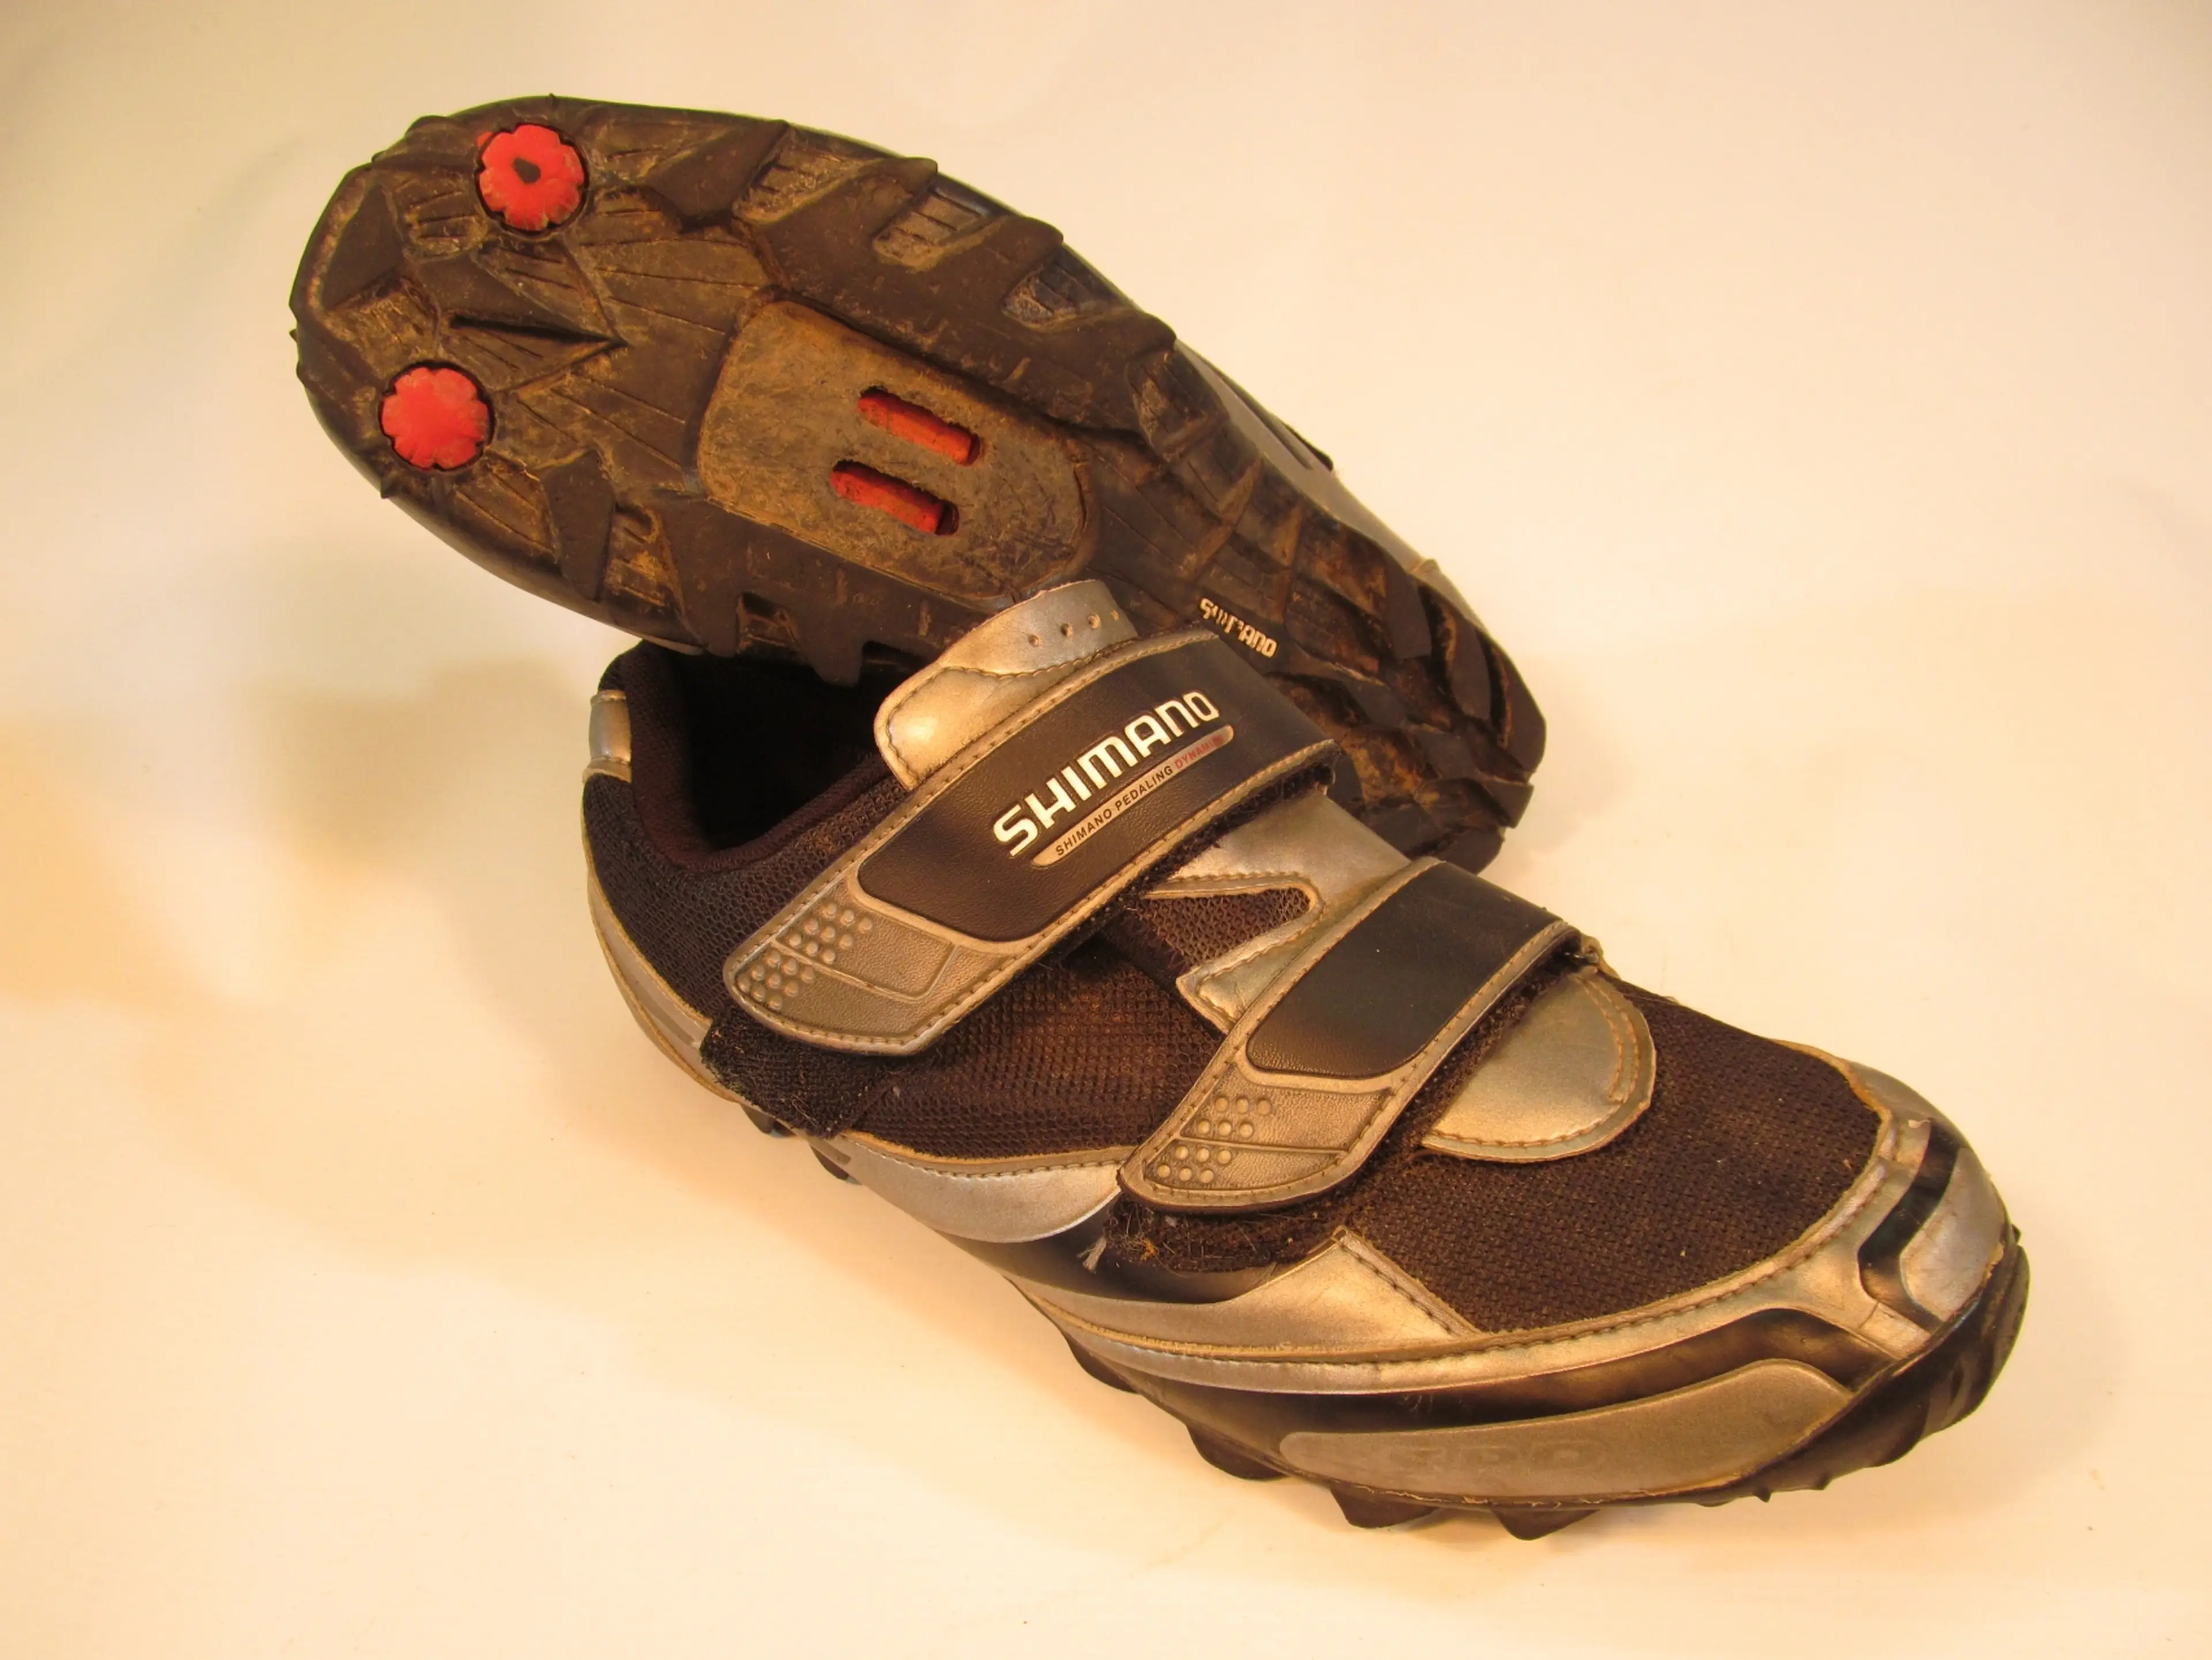 1. Pantofi Shimano SH-M064G, nr 44, 27.8 cm